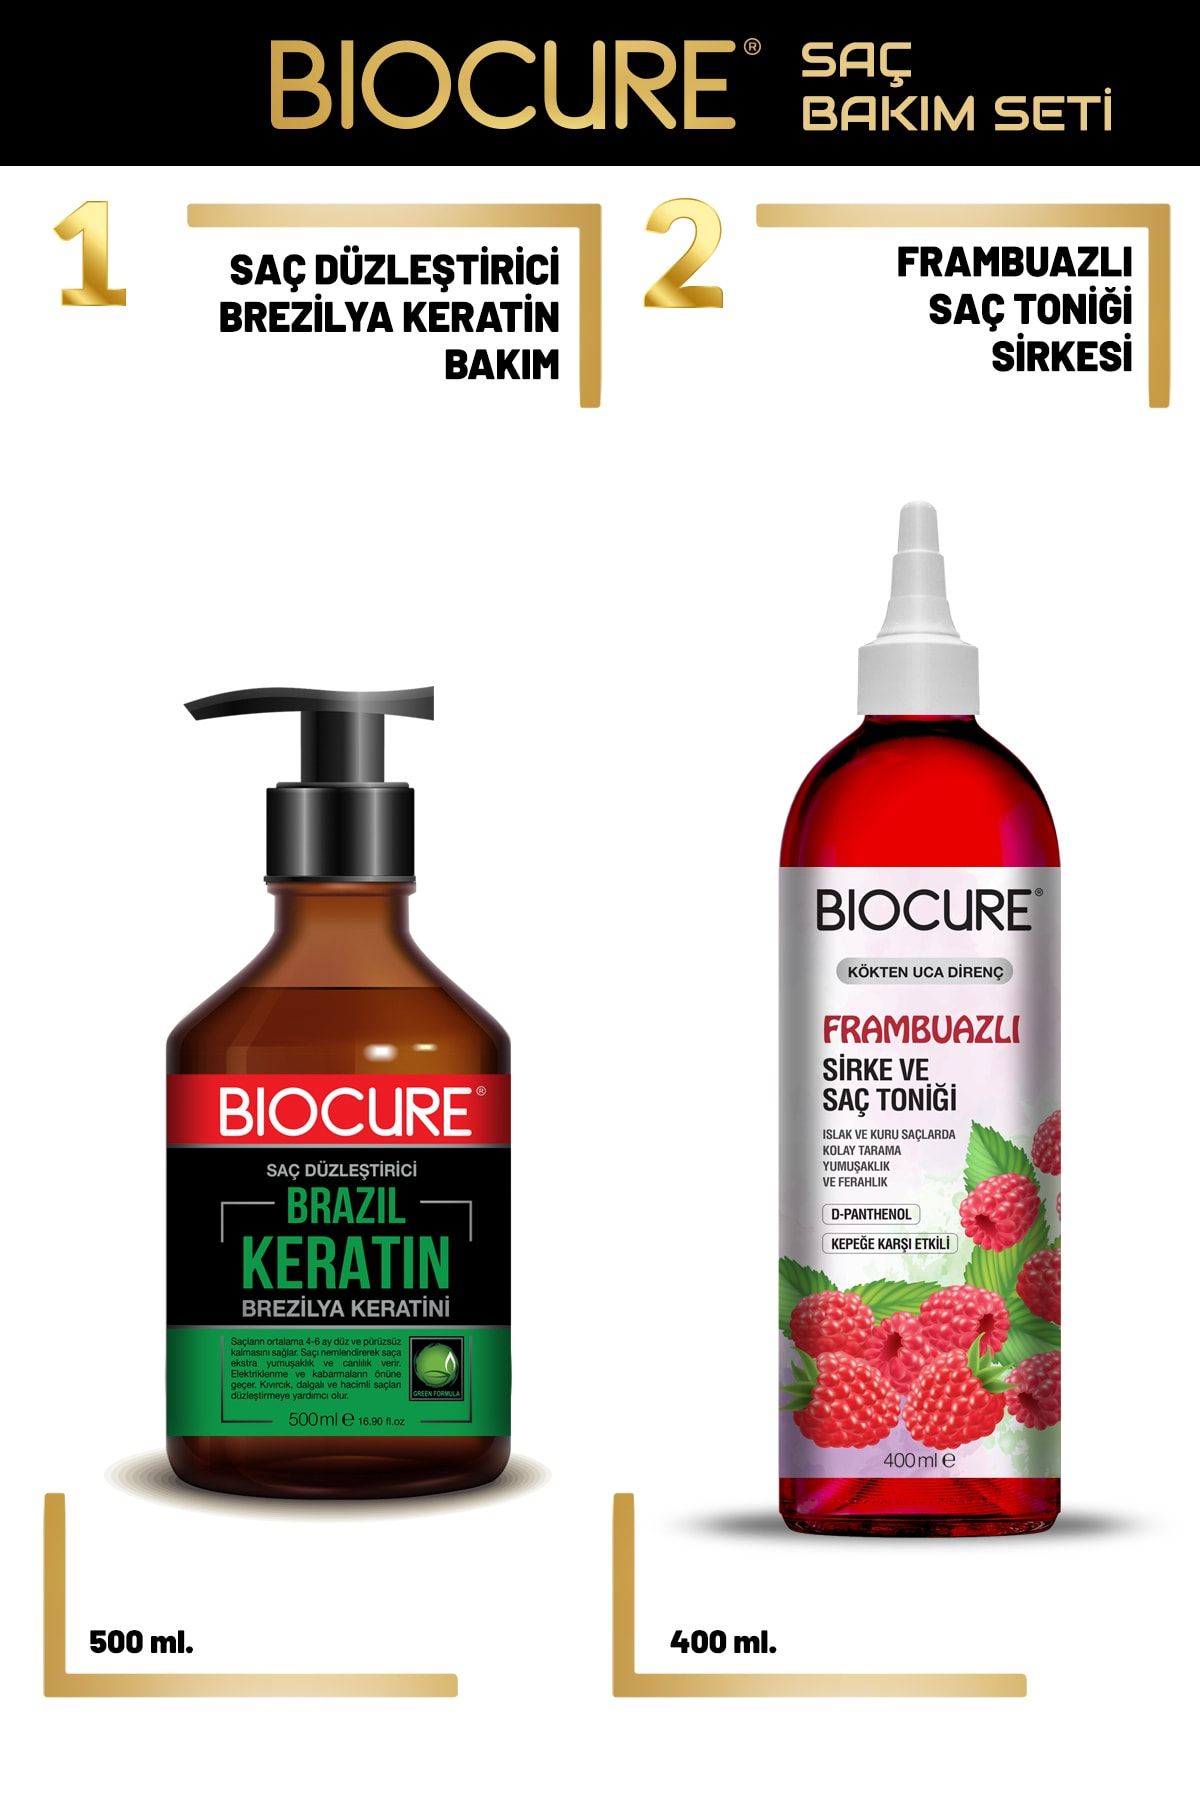 Biocure Saç Düzleştirici Brezilya Keratin Bakımı + Frambuazlı Sirke Ve Saç Toniği 400 Ml.